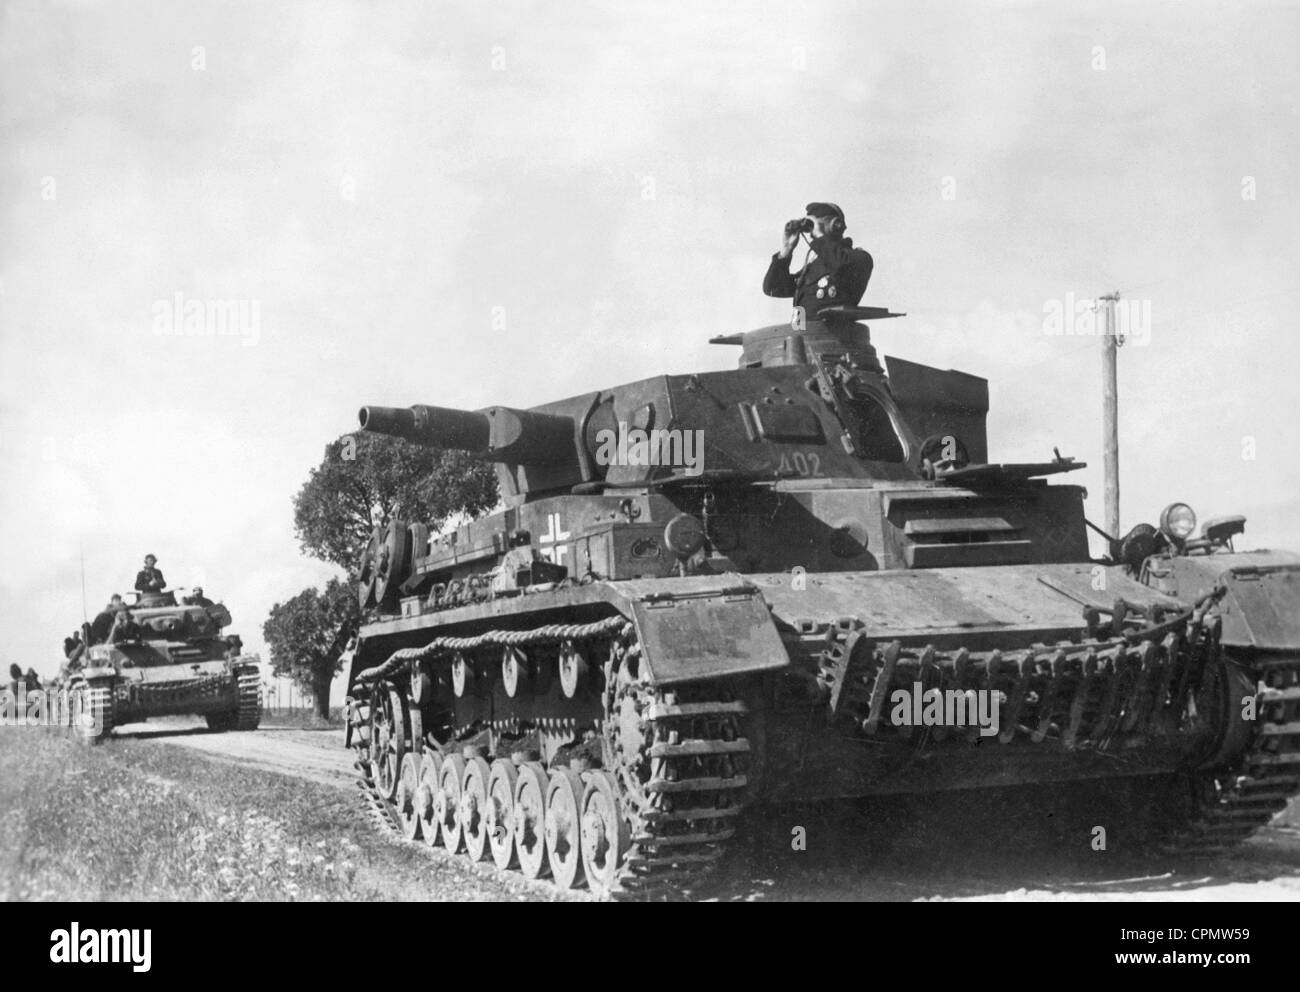 deutsche-panzer-iv-an-der-ostfront-1941-cpmw59.jpg